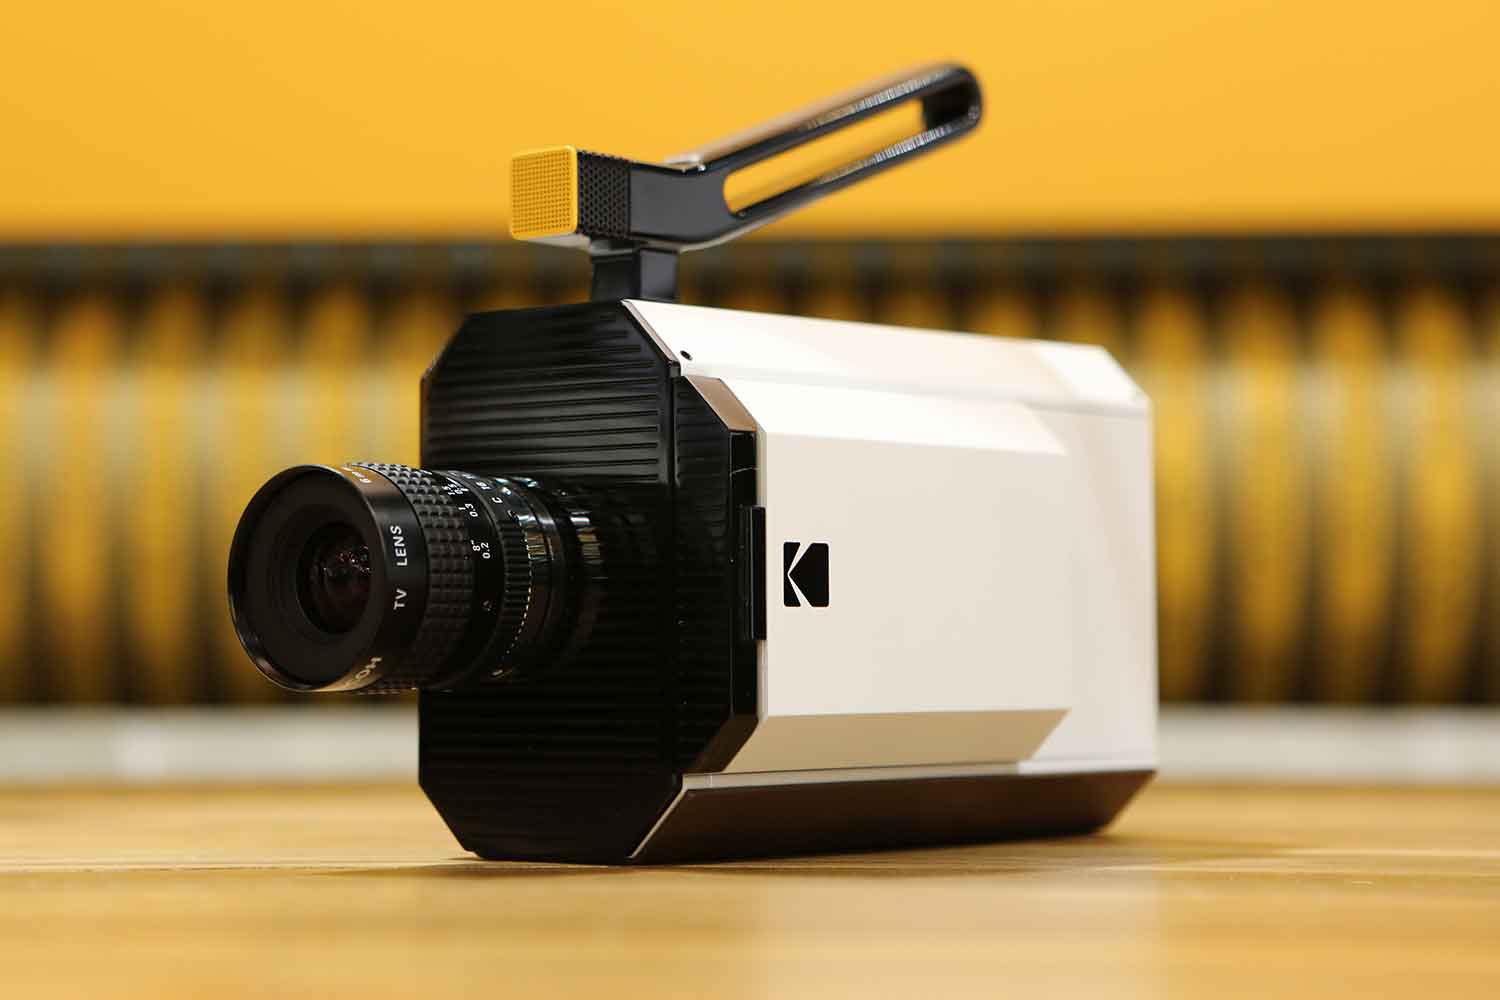 kodaks new super 8mm film camera merges past with future kodak 8 ax8a8258